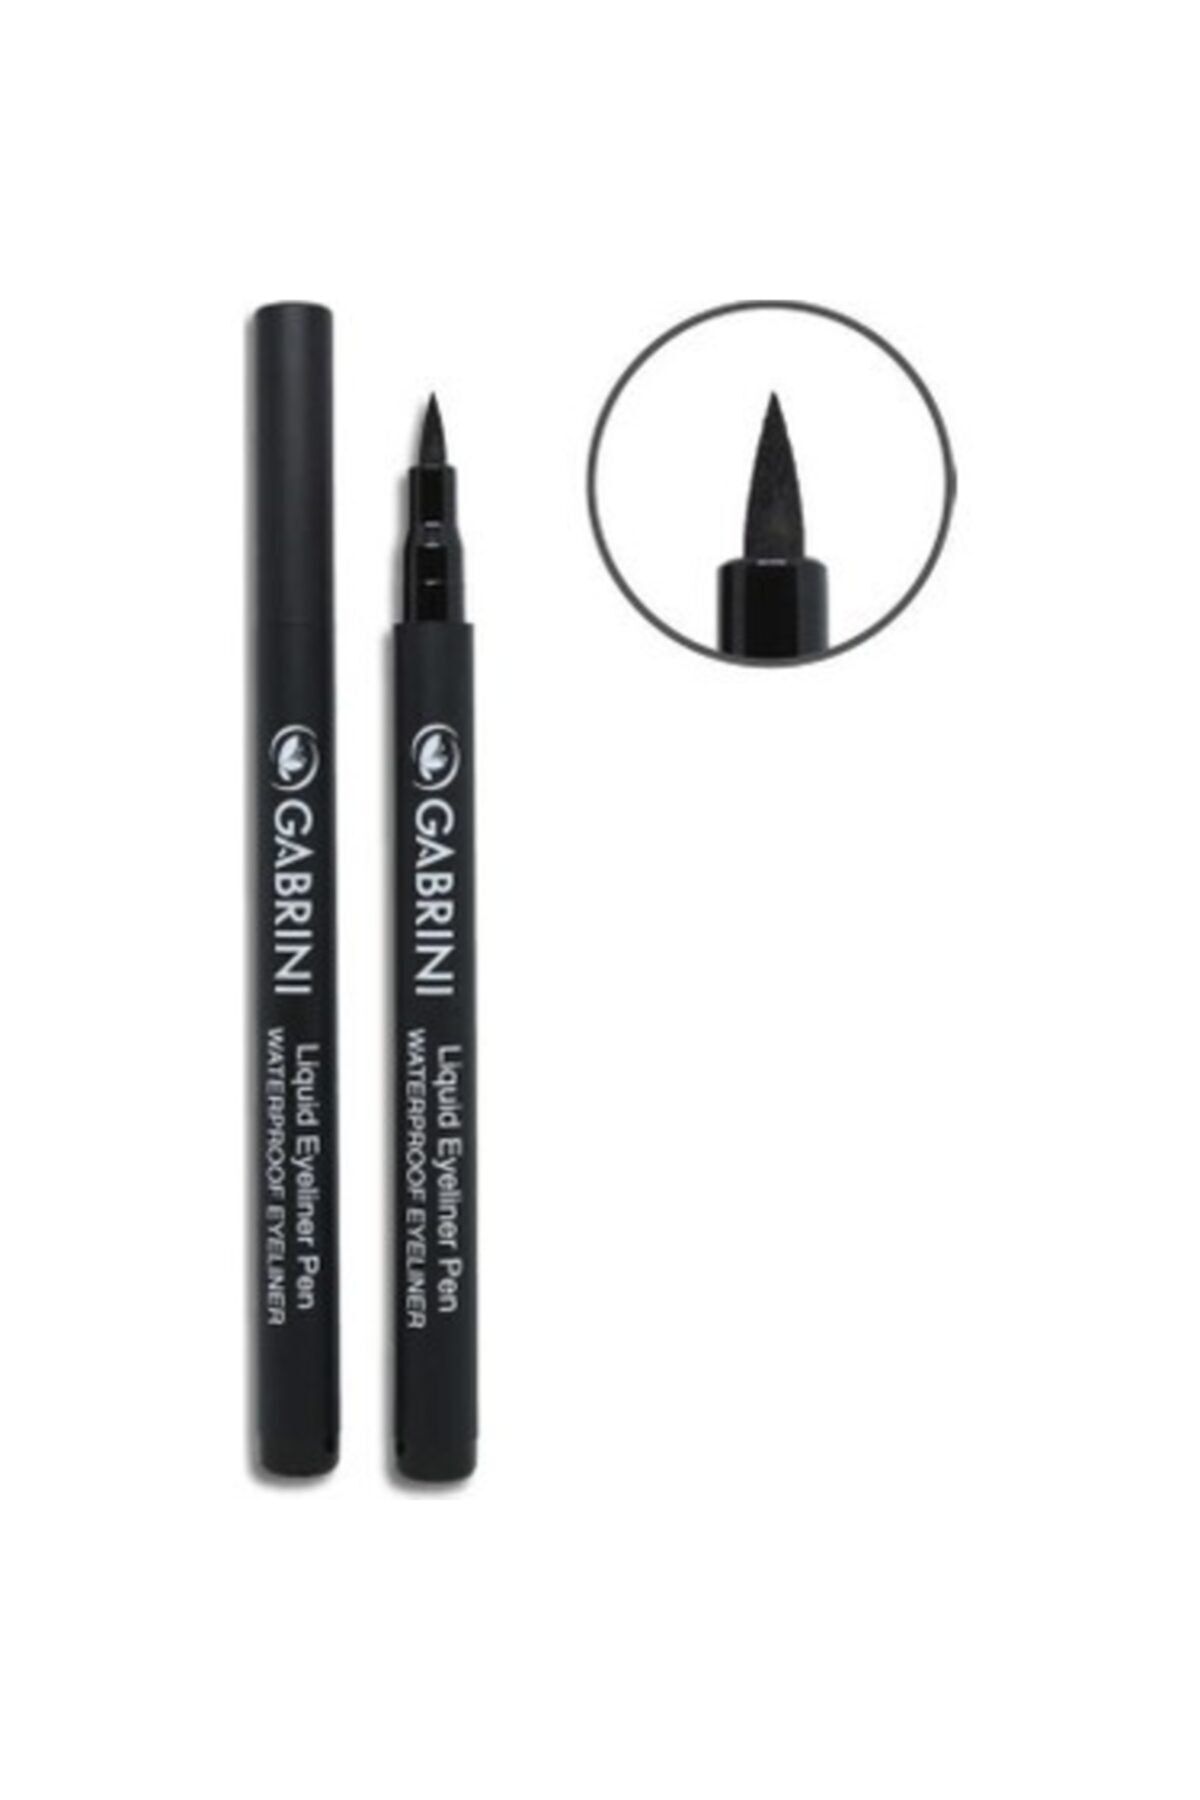 Gabrini Likit Siyah Eyeliner - Liquid Eyeliner Pen